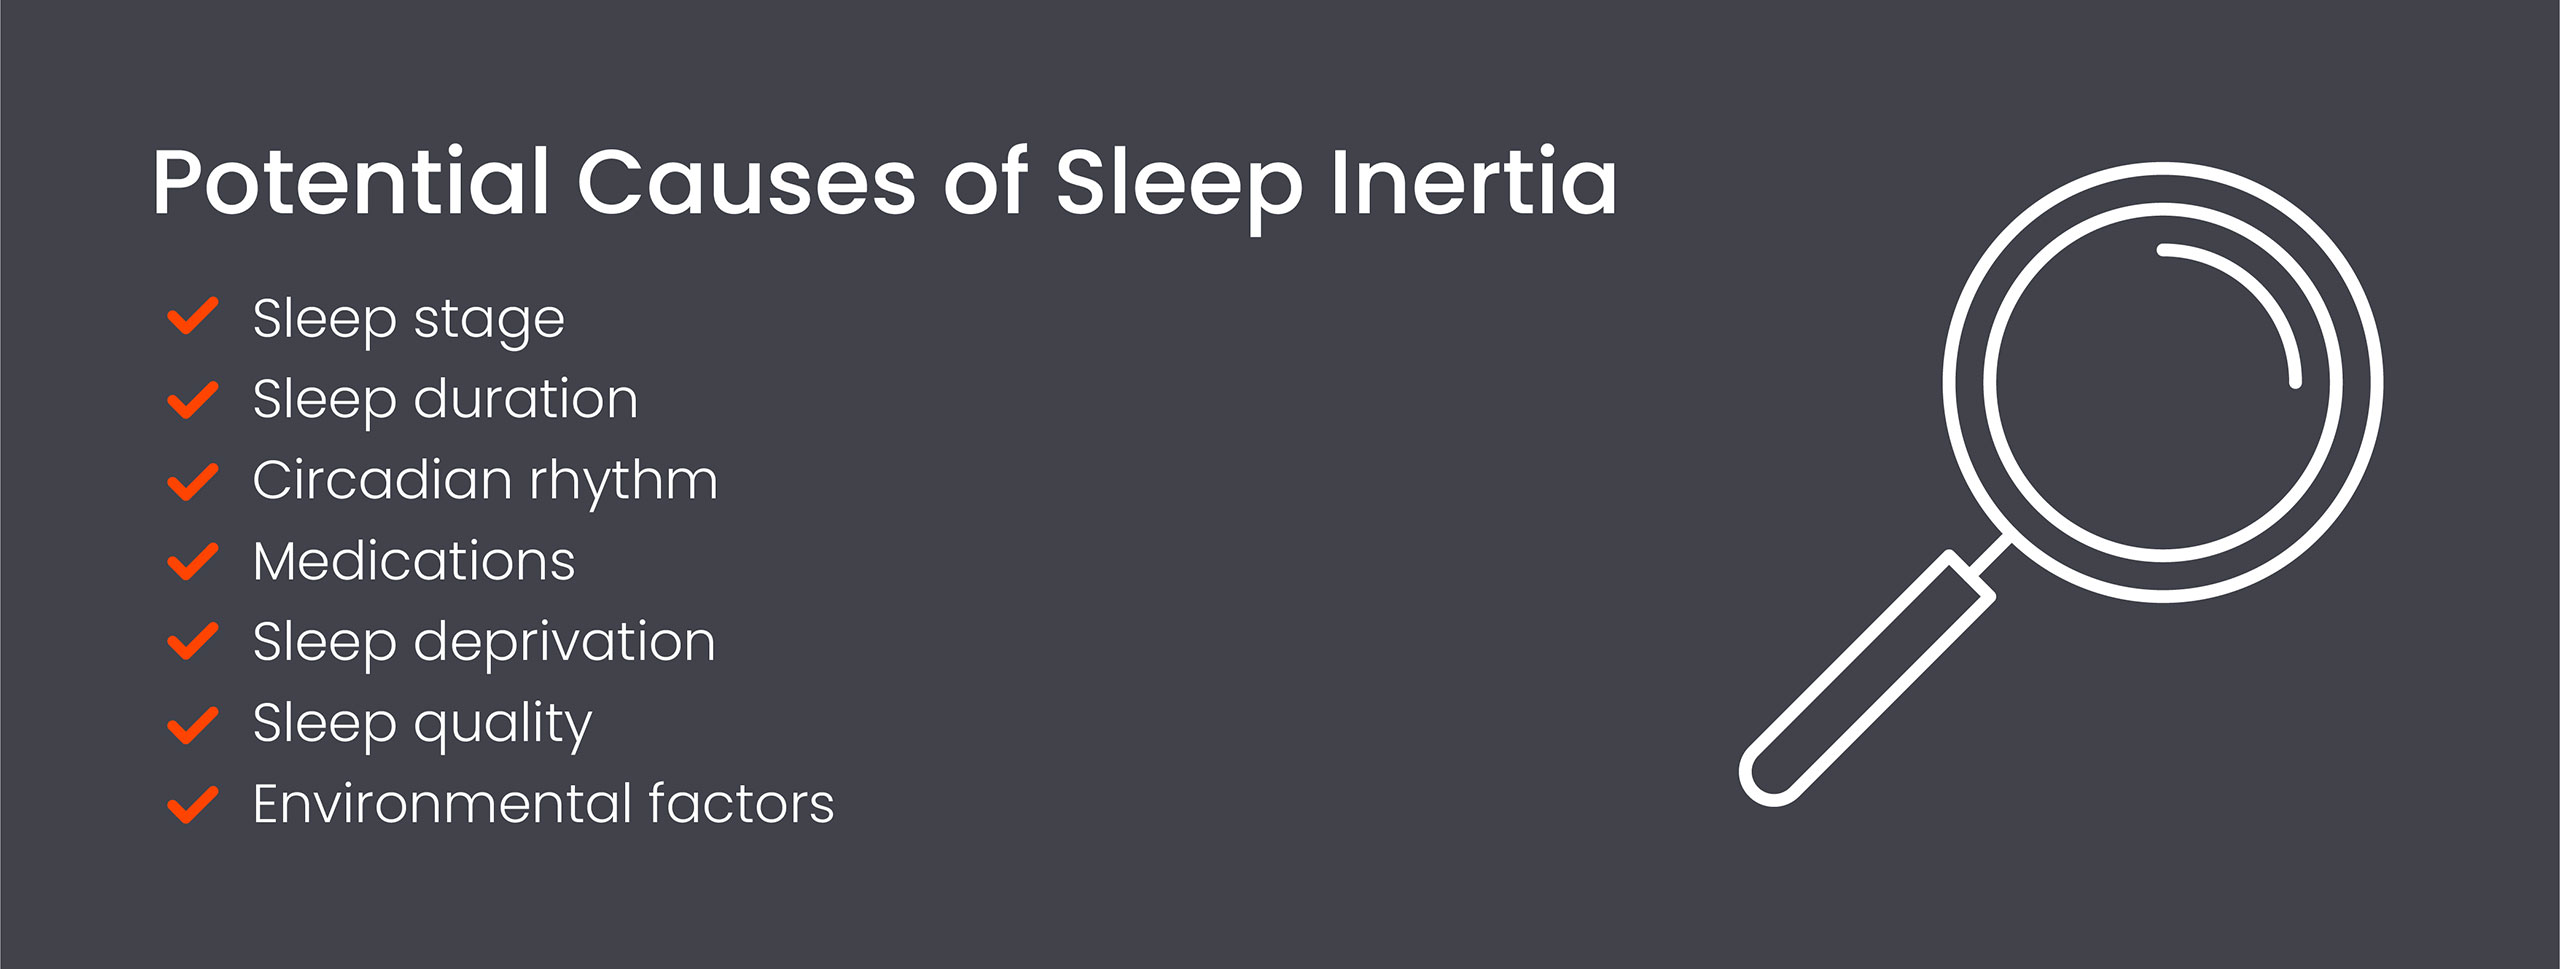 Potential causes of sleep inertia